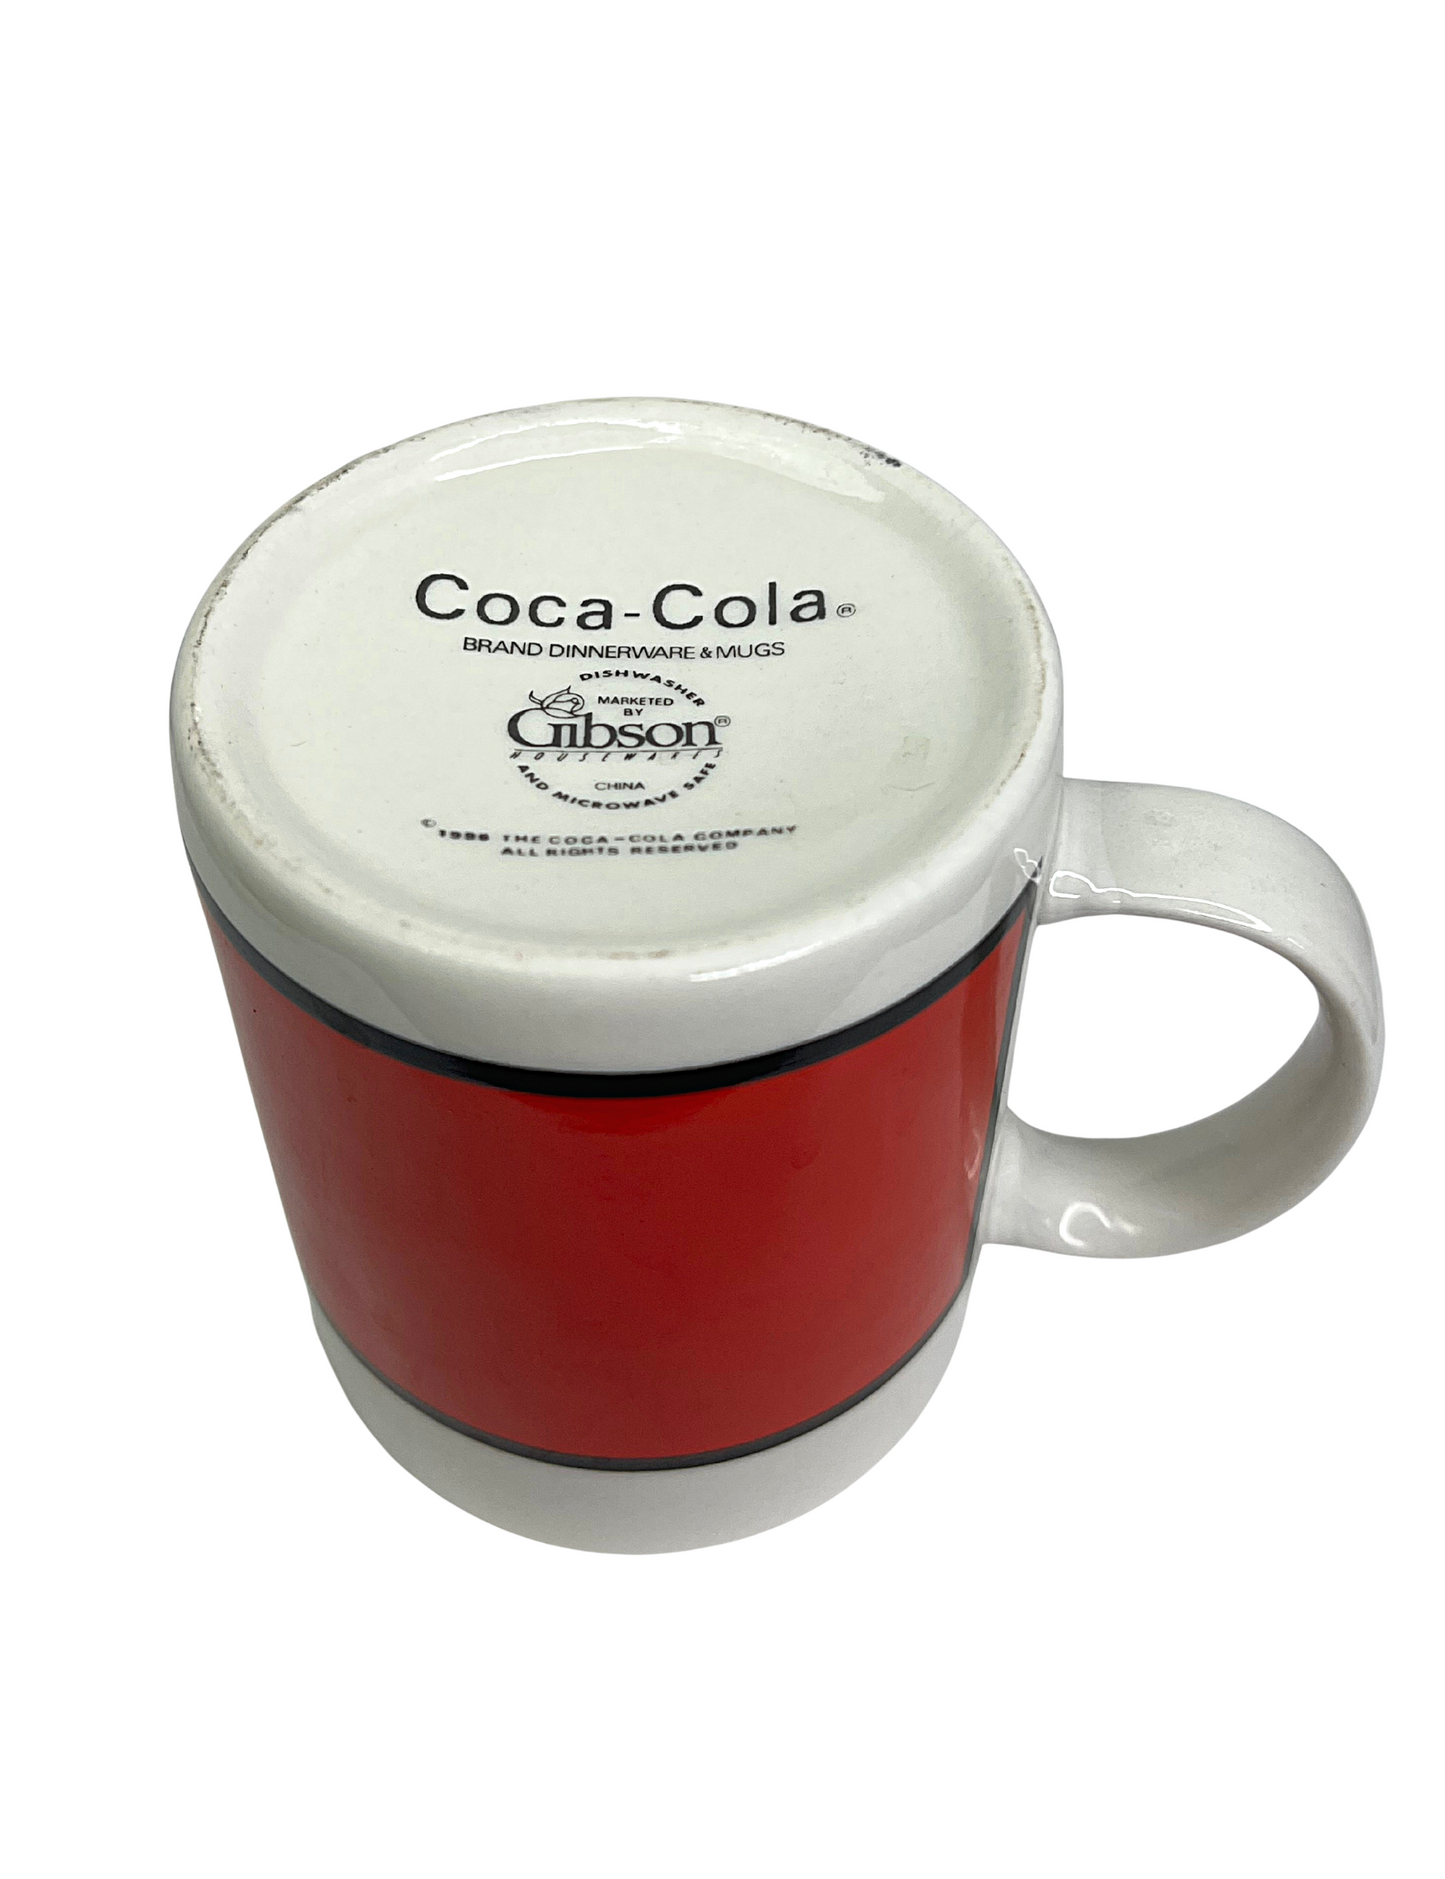 1996 Coca-Cola Gibson 12oz Coffee Mug